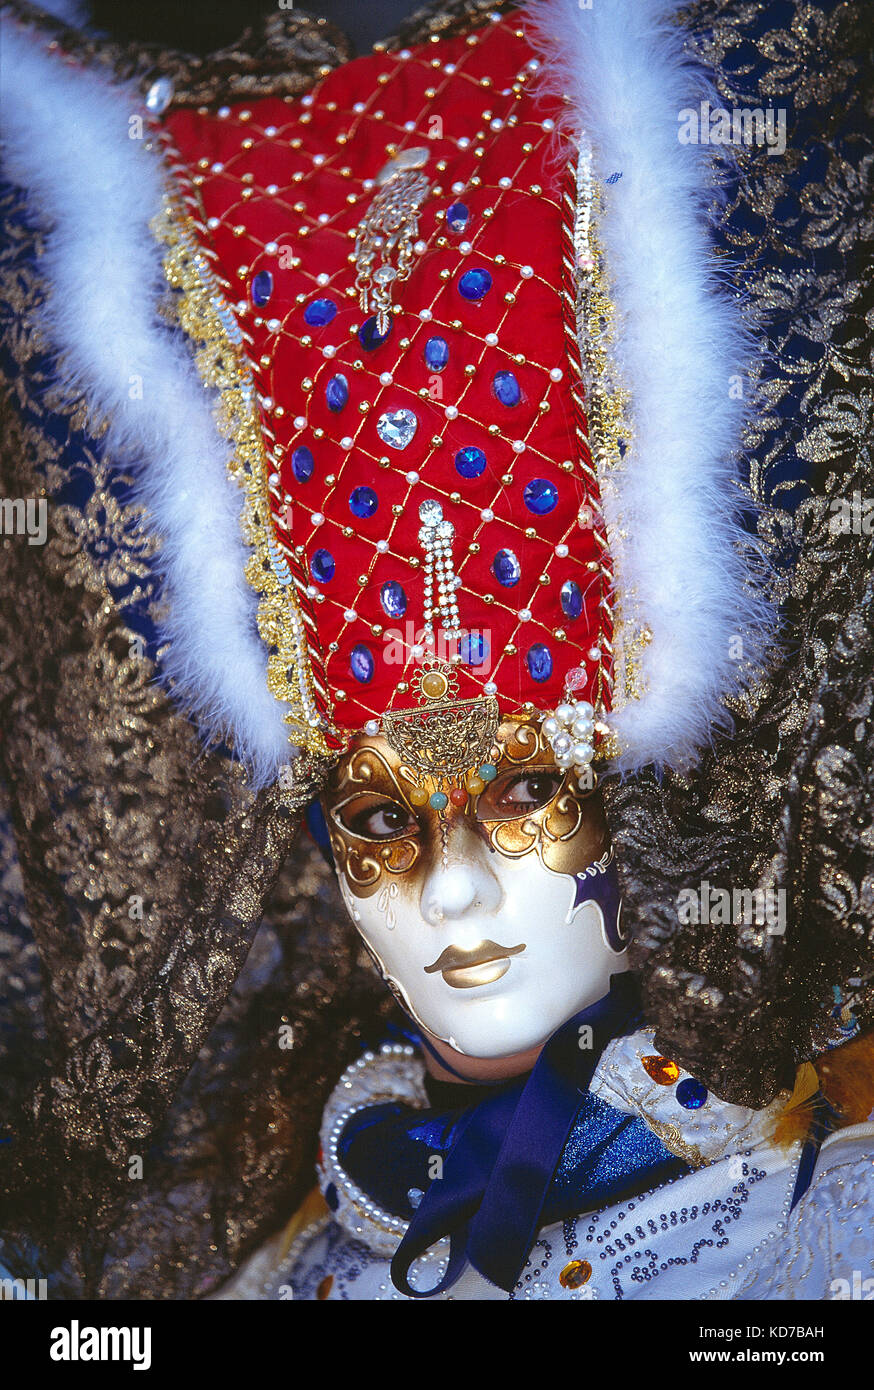 Italia. Venezia. Carnevale. Donna in costume. Primo piano del viso con  maschera bianca Foto stock - Alamy, maschere carnevale bianche - srd.ngo